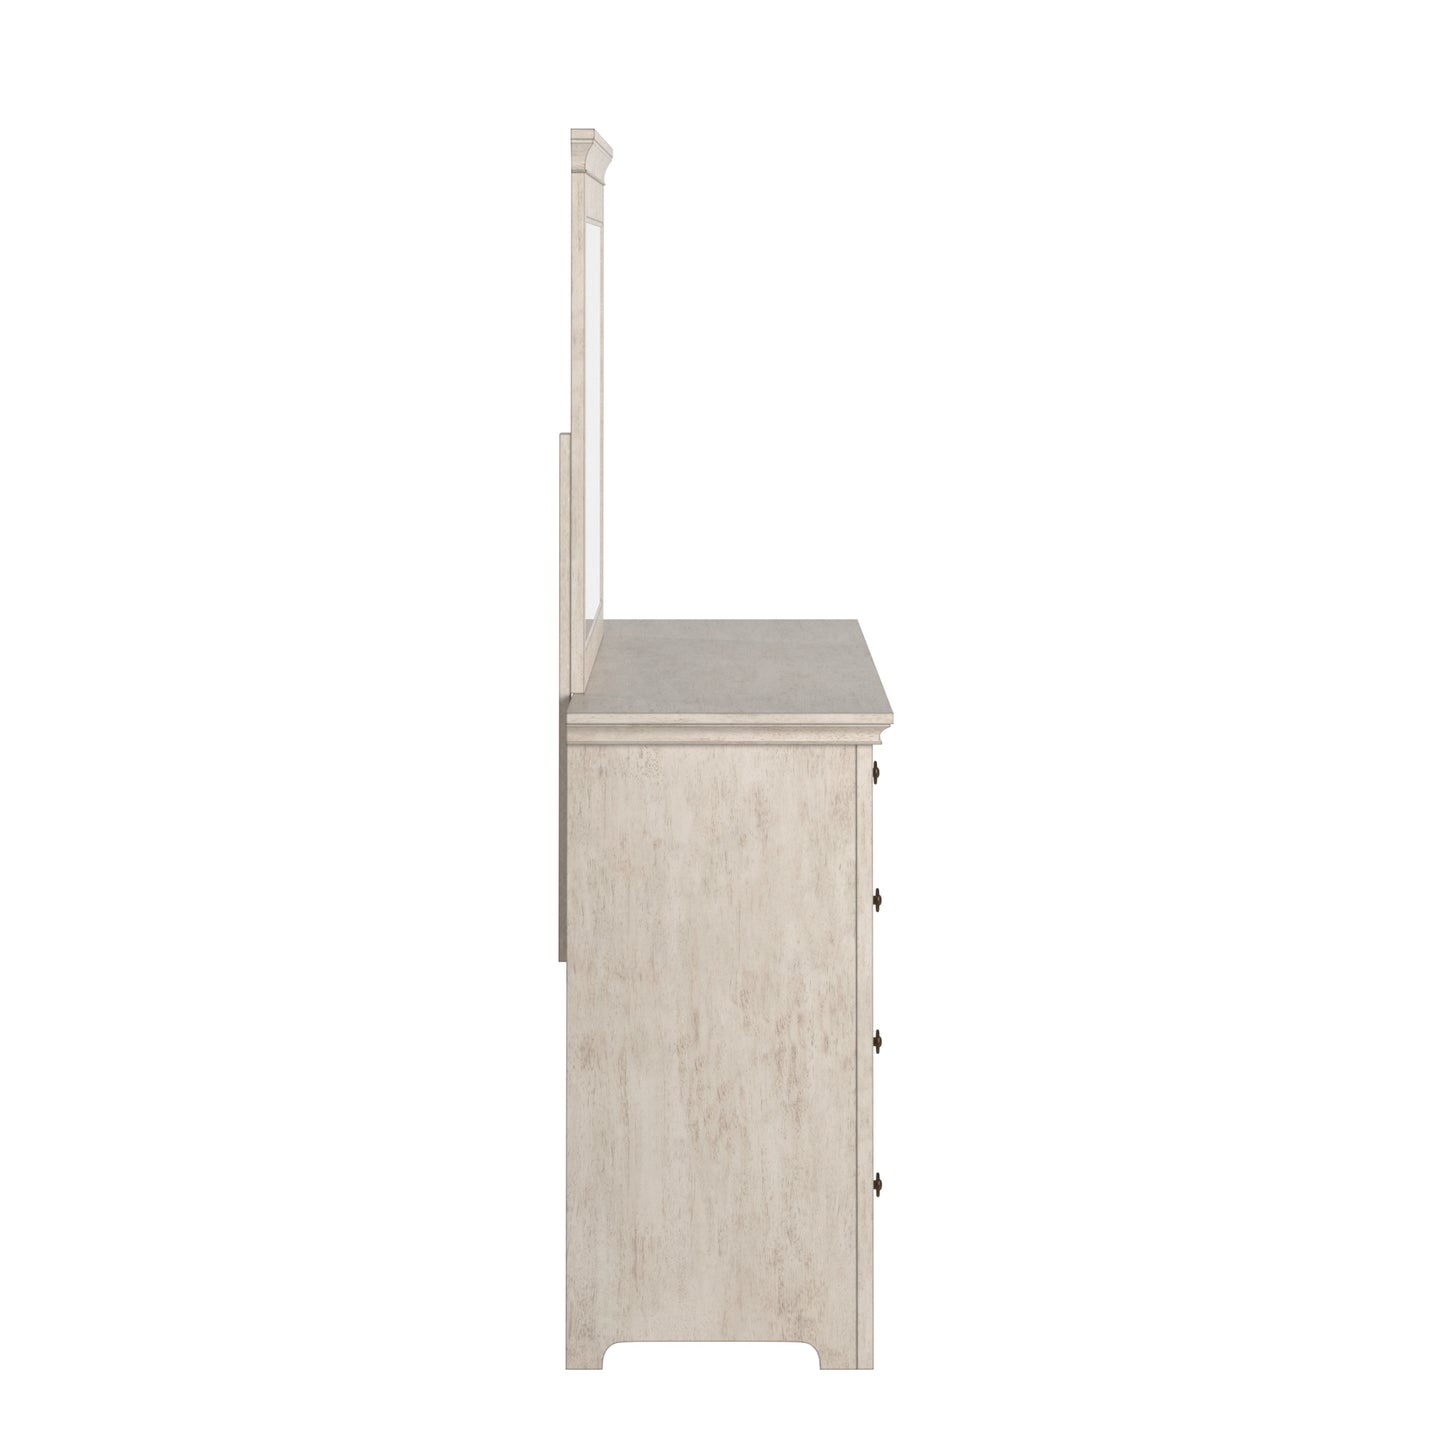 9-Drawer Wood Modular Storage Dresser - Antique White Finish, Dresser and Mirror Set